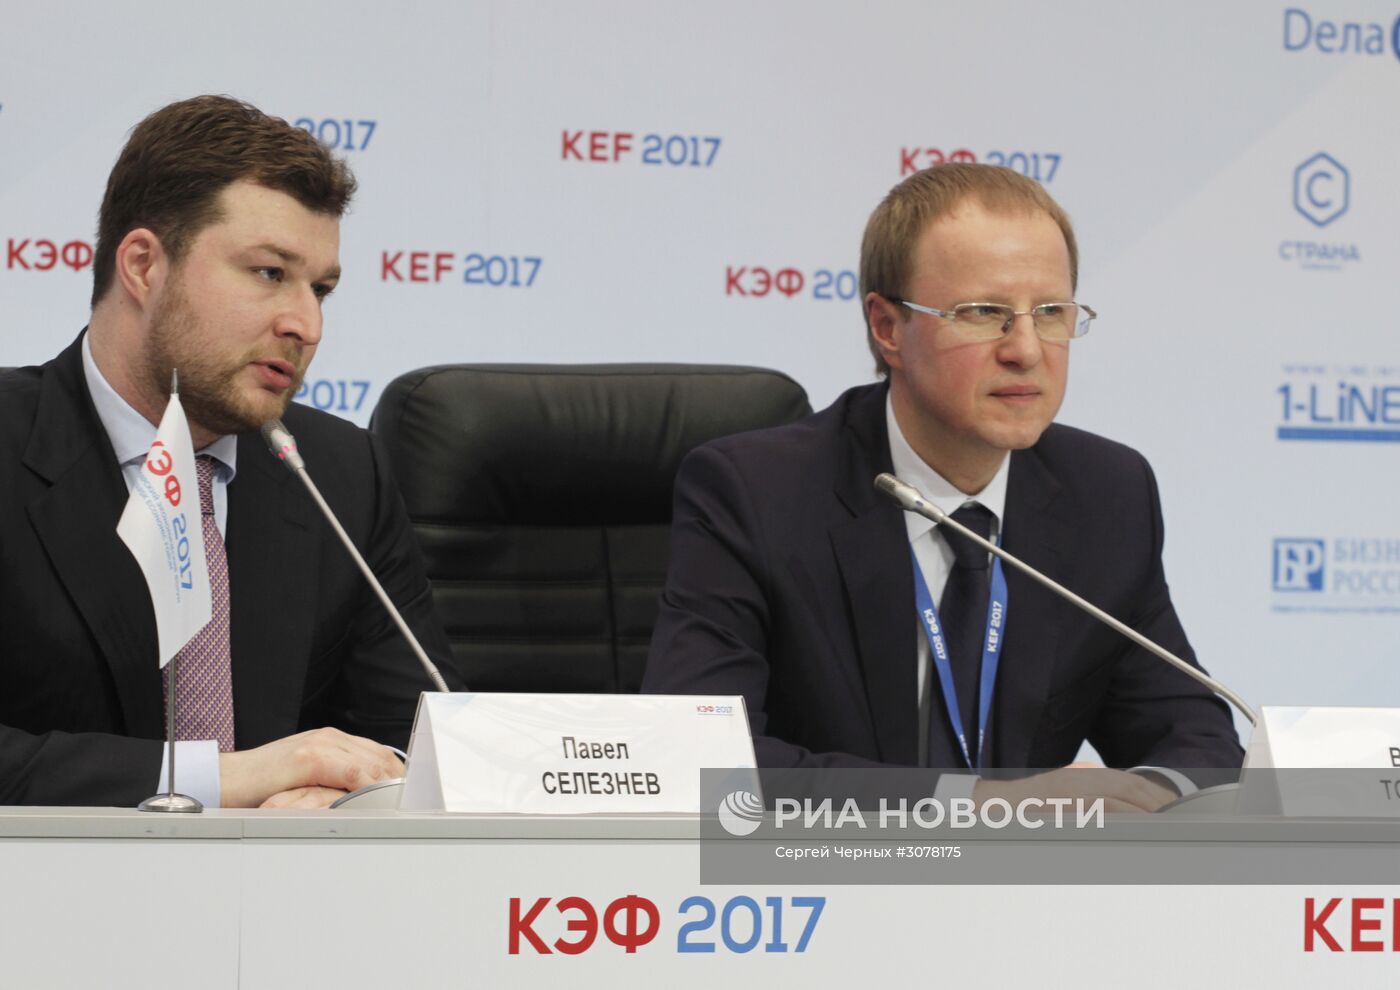 Красноярский экономический форум. День первый